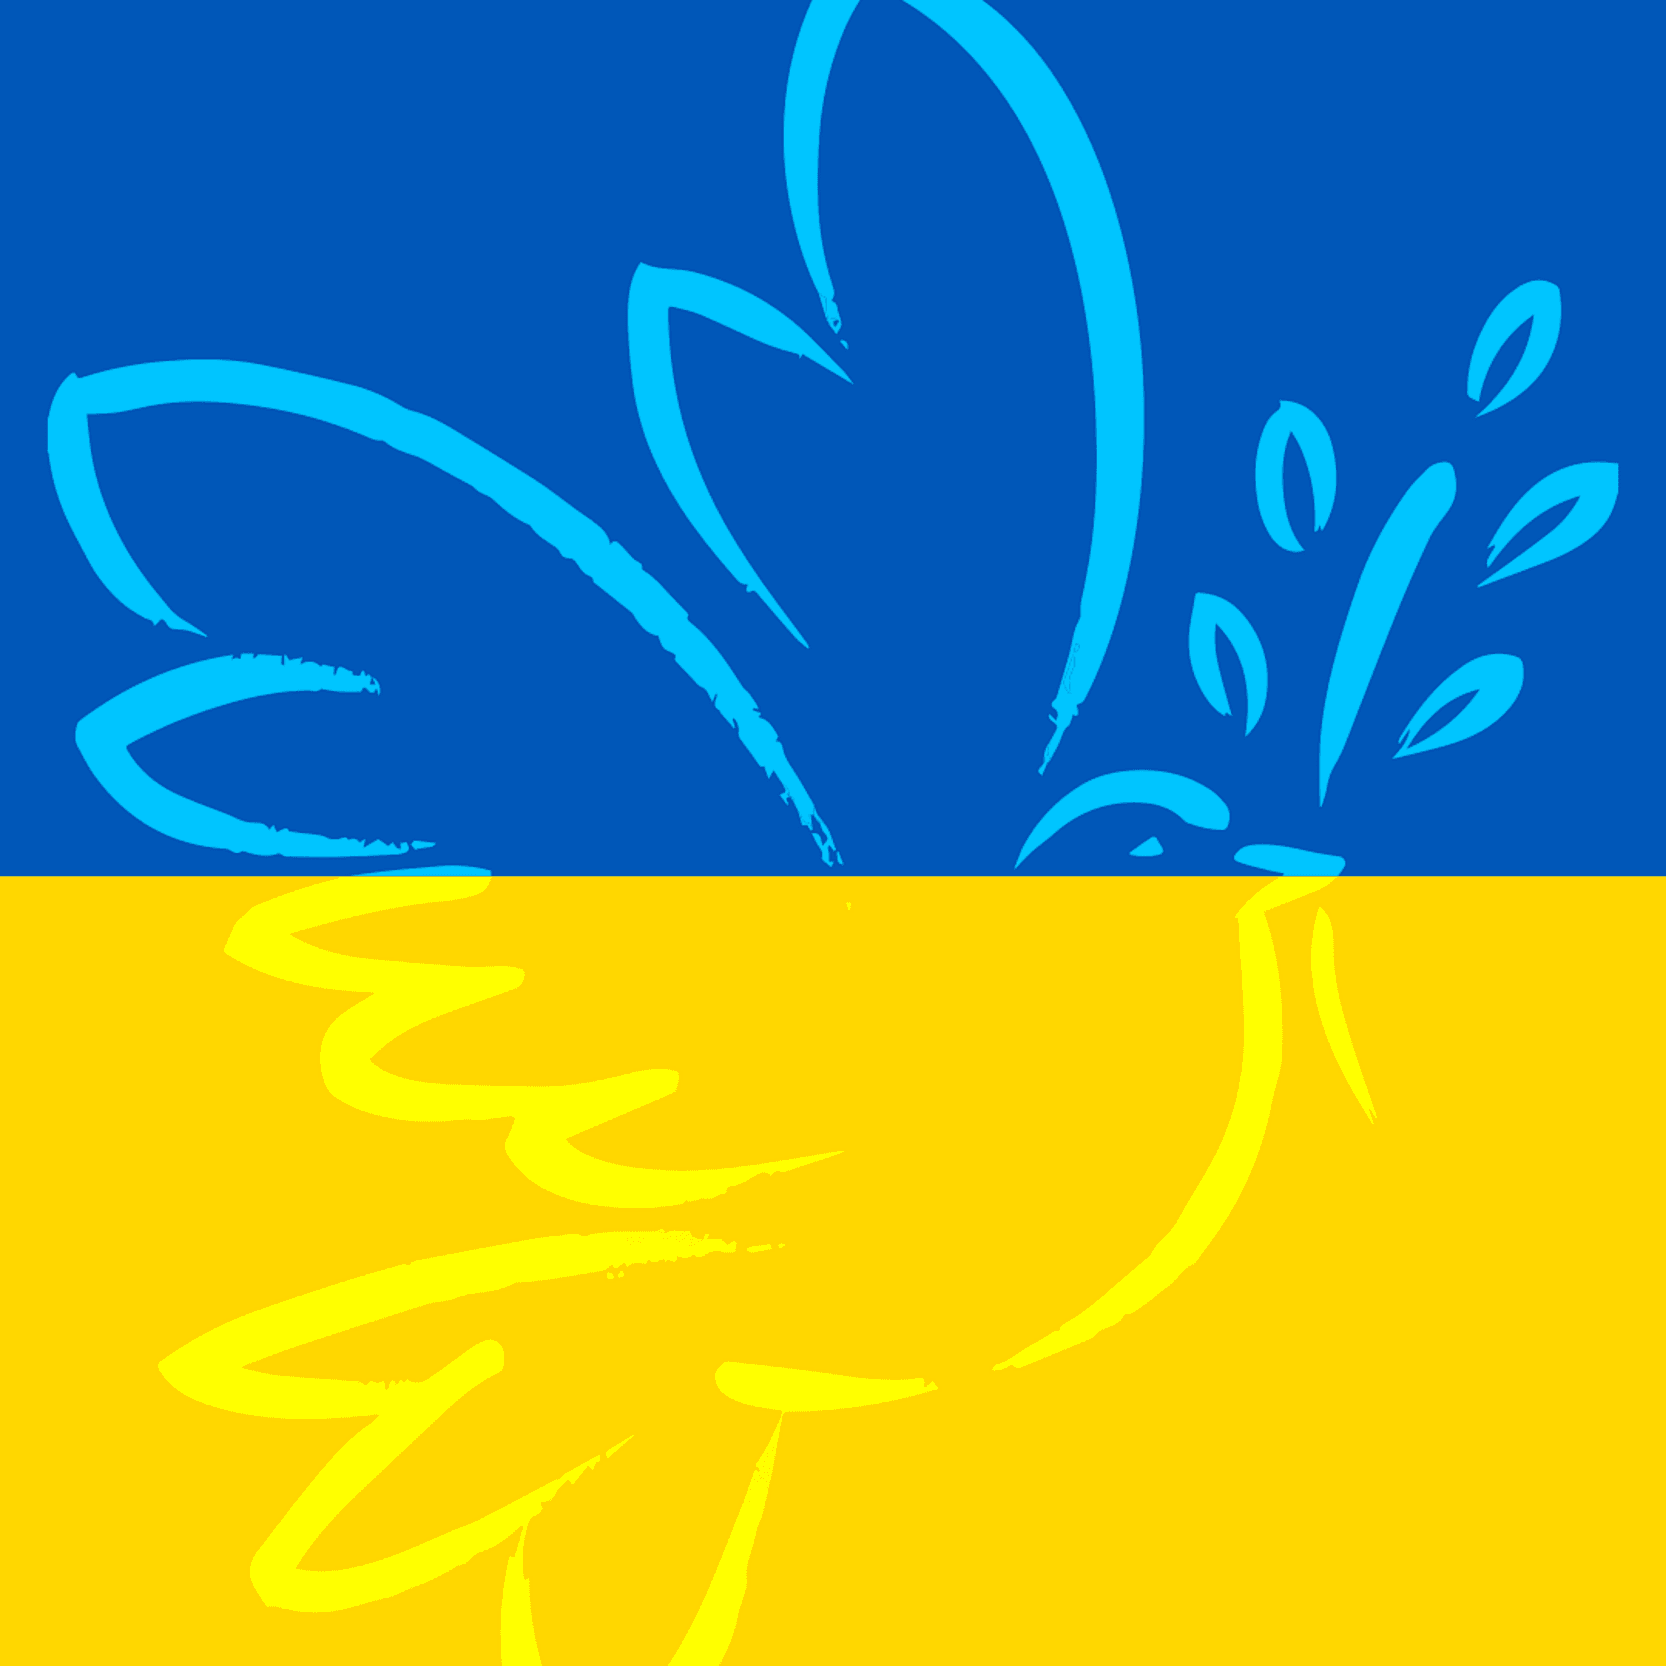 Im Hintergrund die Farben Blau und Gelb der Ukraineflagge, darauf eine Friedenstaube